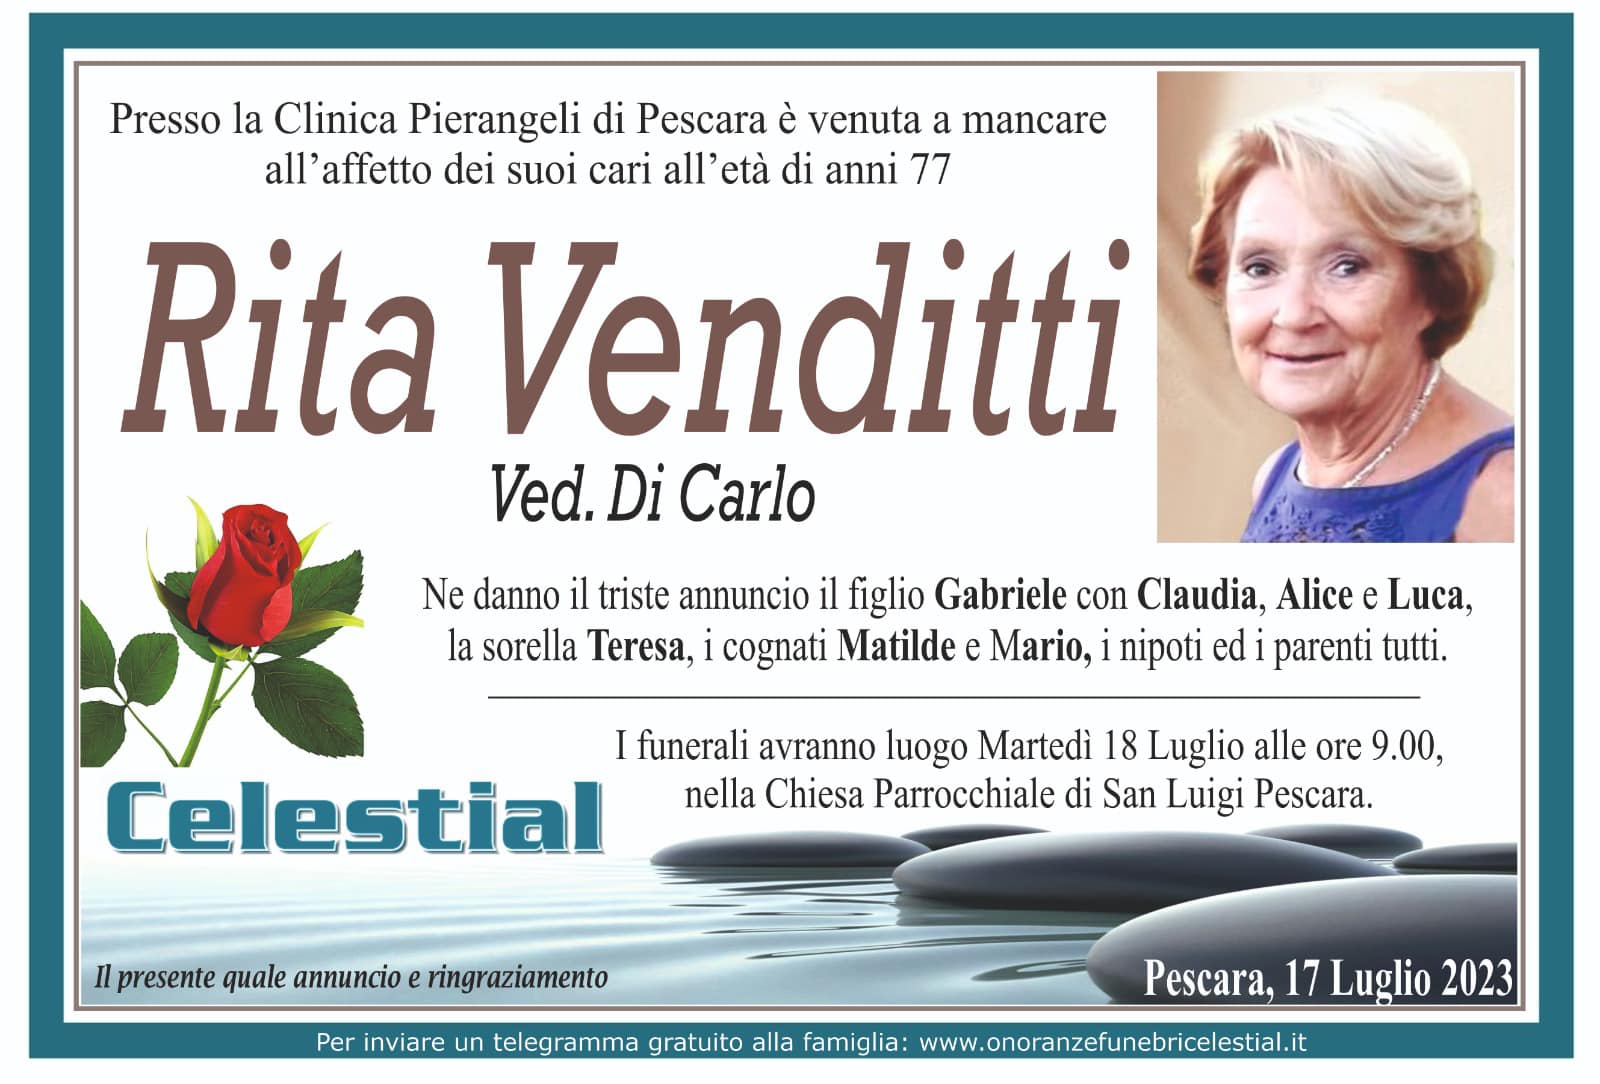 Rita Venditti